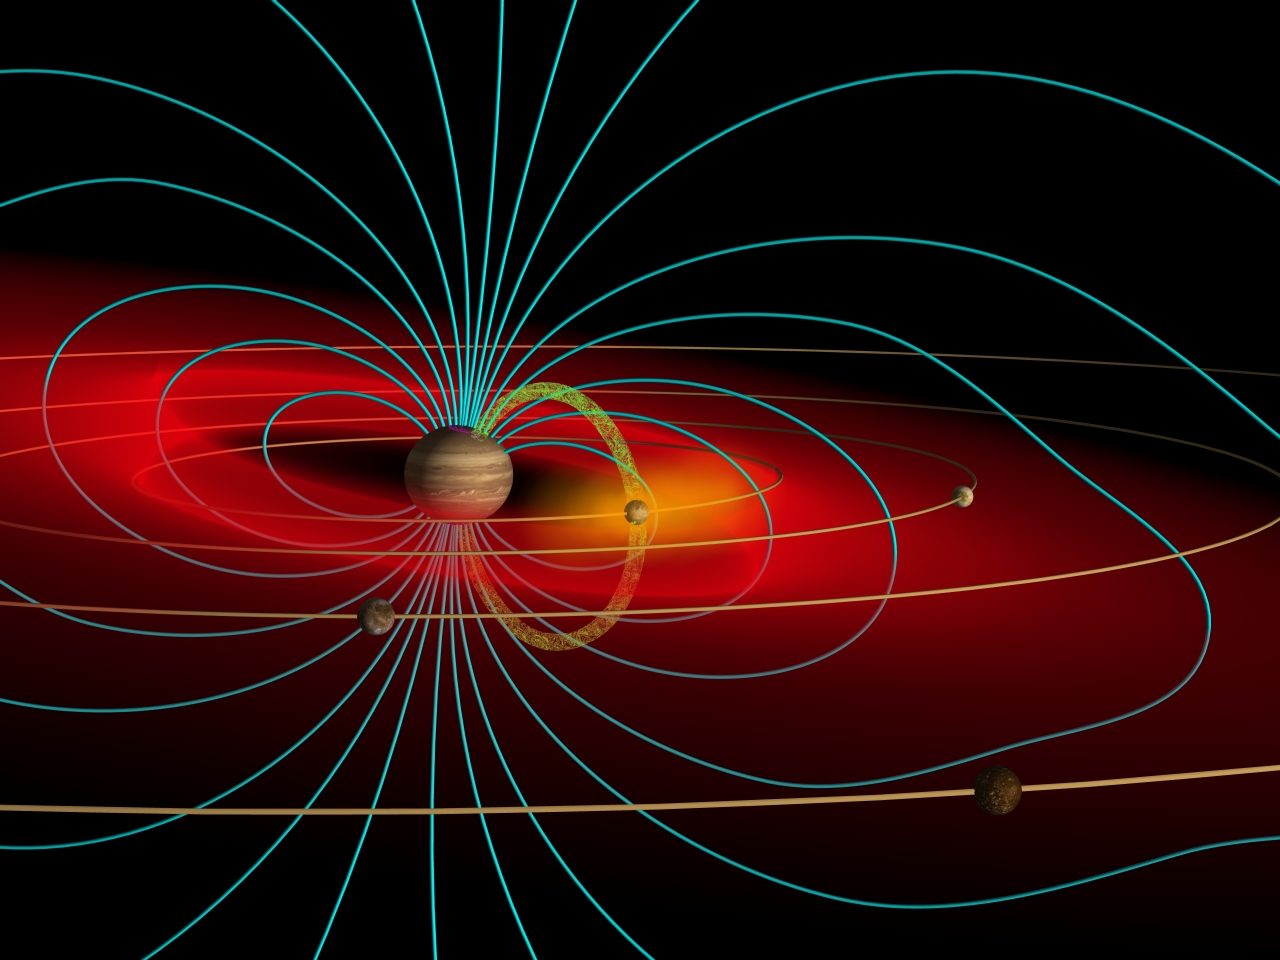 Jupiter magnetosphere schematic